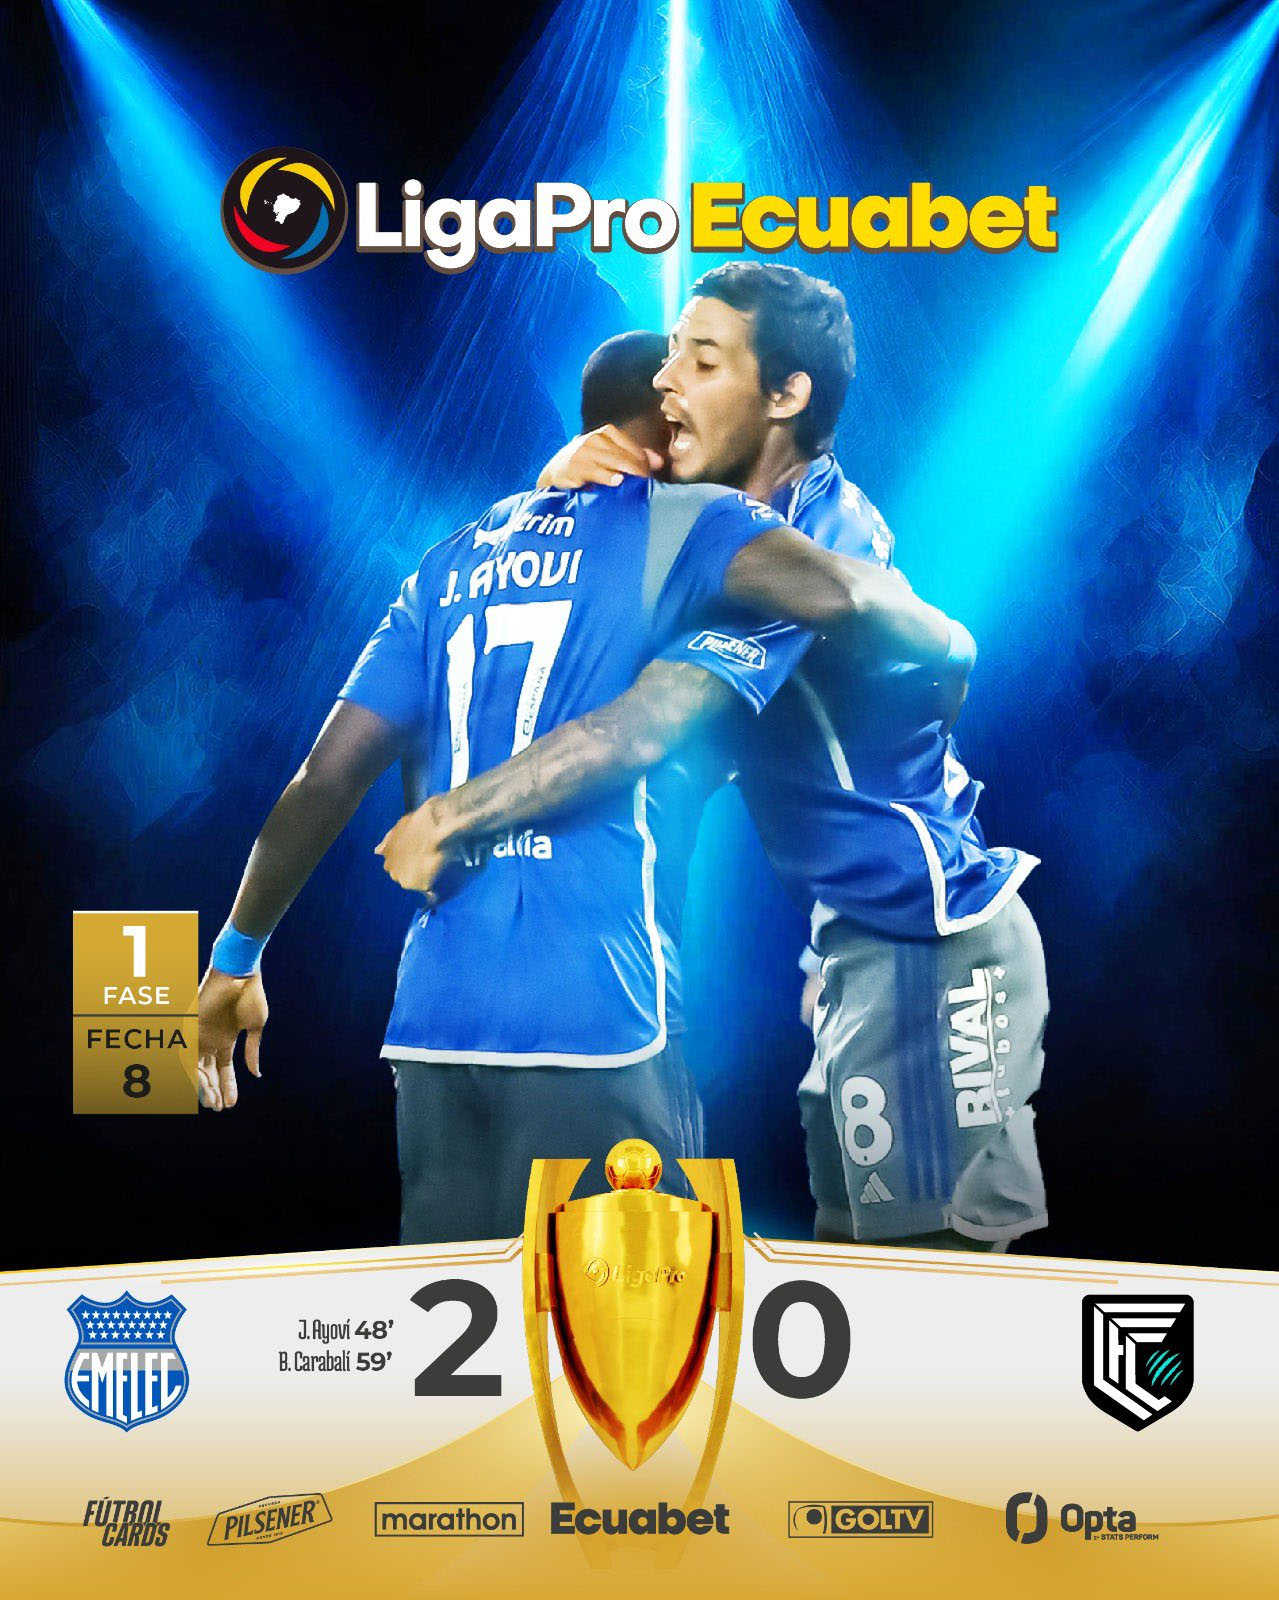 Emelec 2-0 Cumbaya